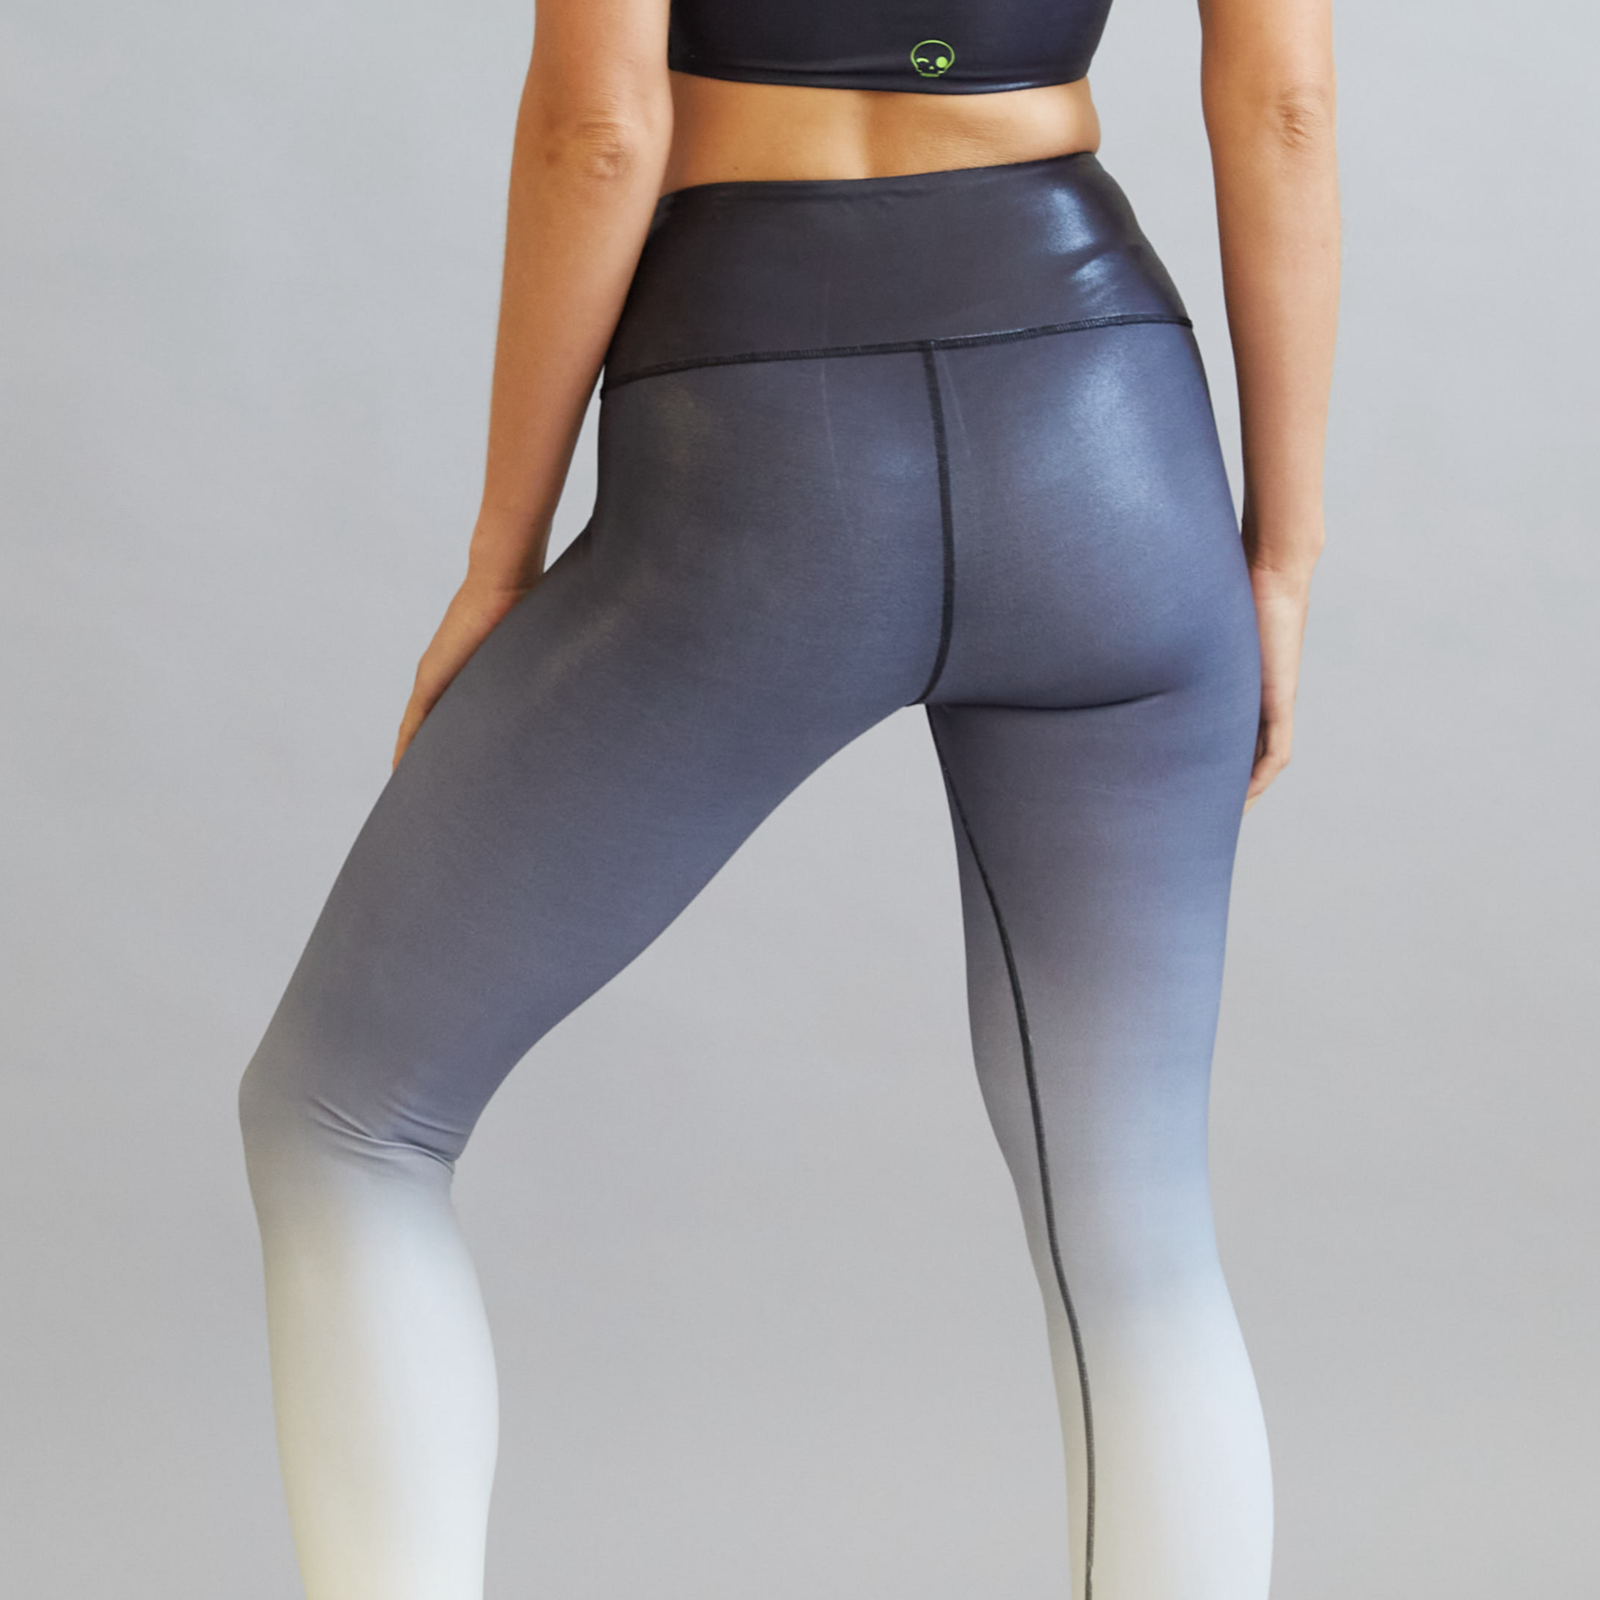 Buy Yoga Pants For Women Online - Zoe Leggings - SCHAAD Active